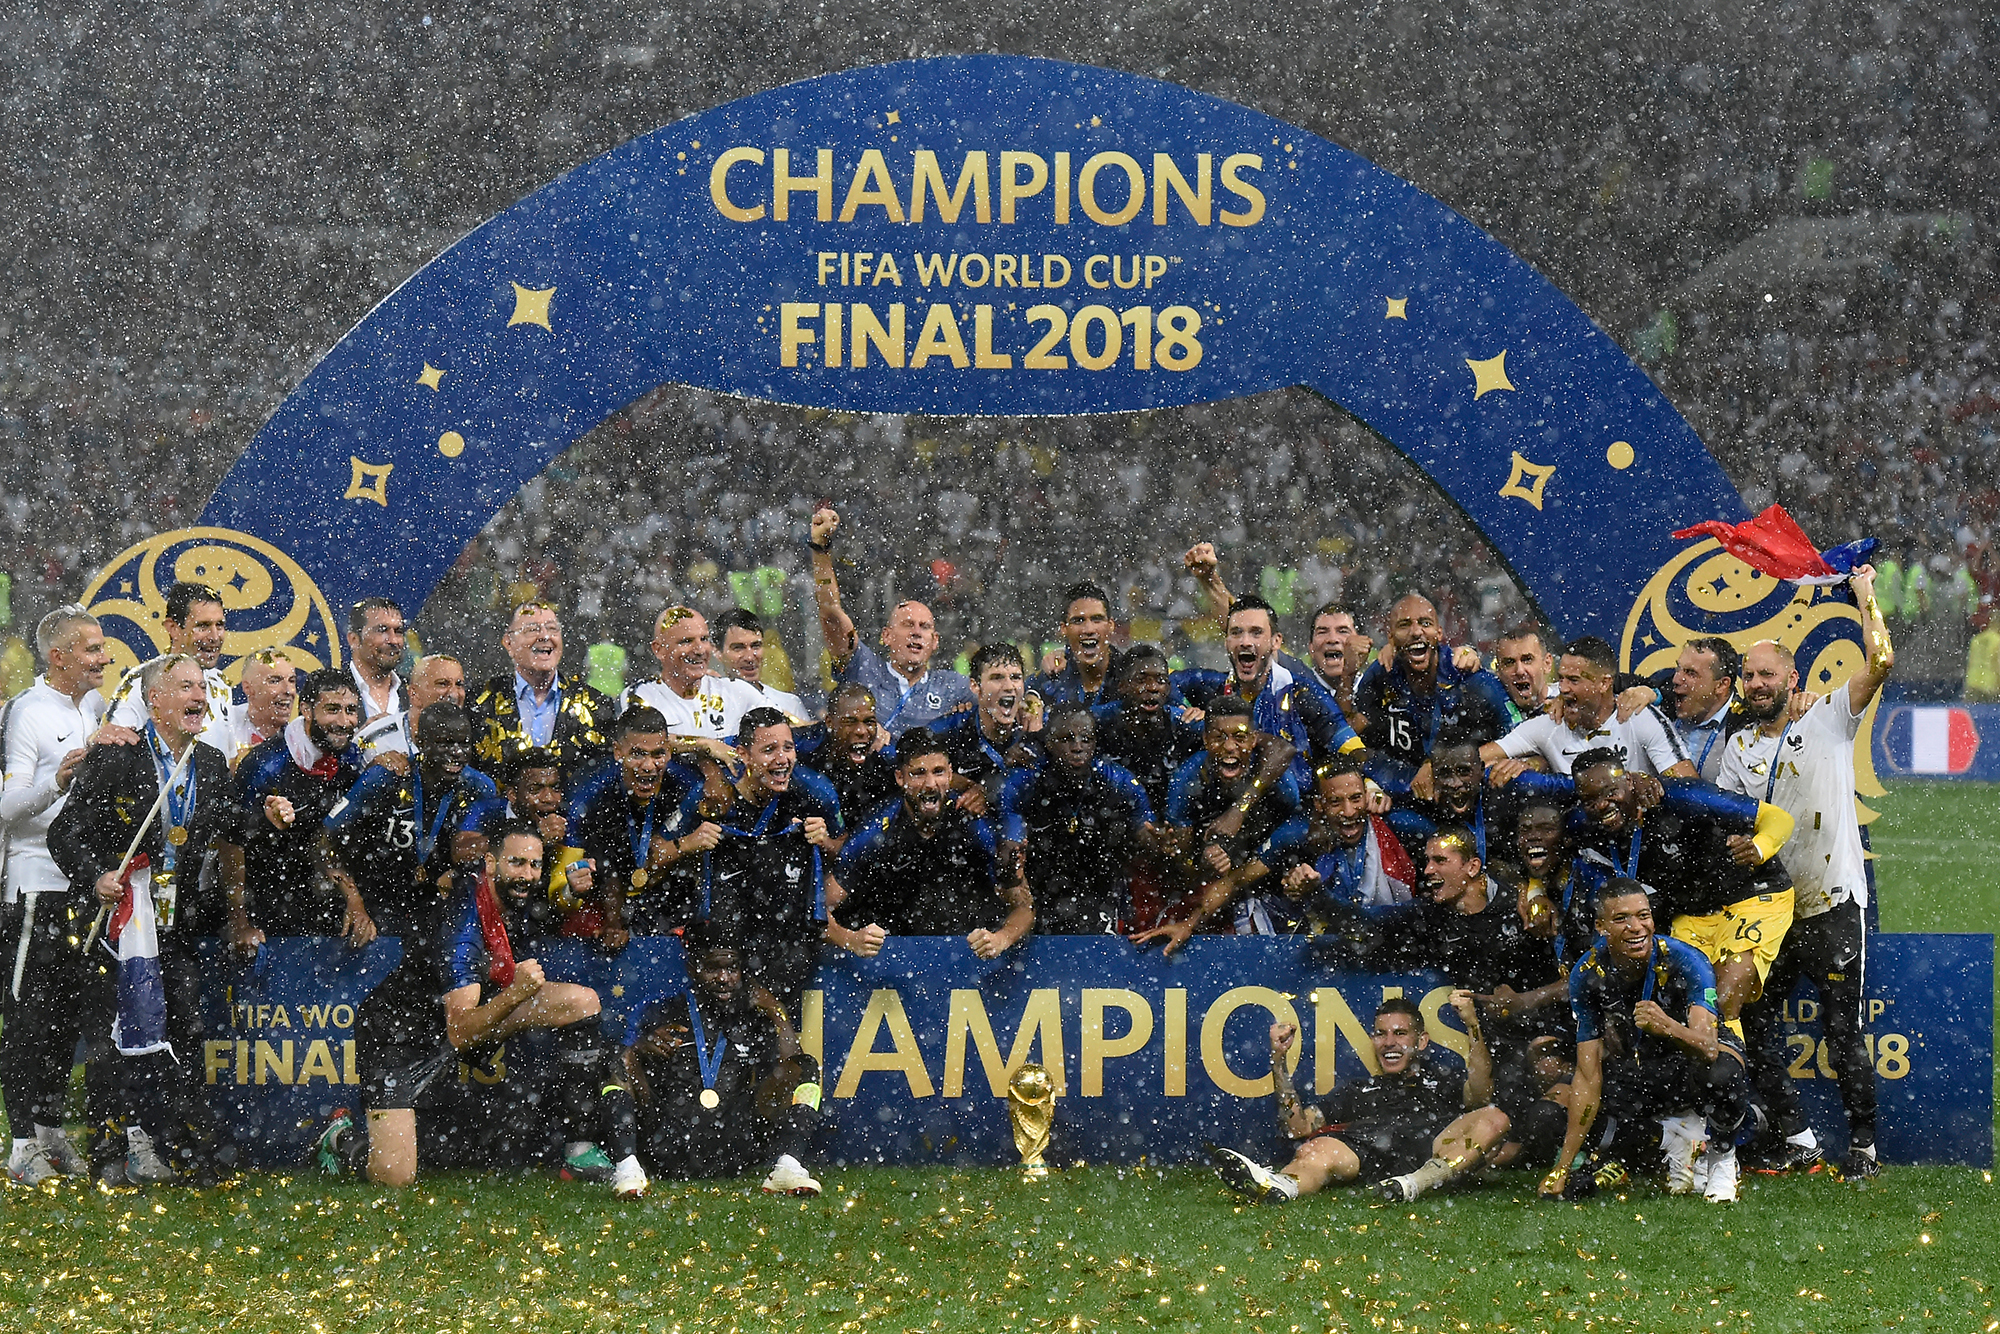 Сборная Франции празднует победу на чемпионате мира 2018 года. Источник: A.Ricardo / Shutterstock